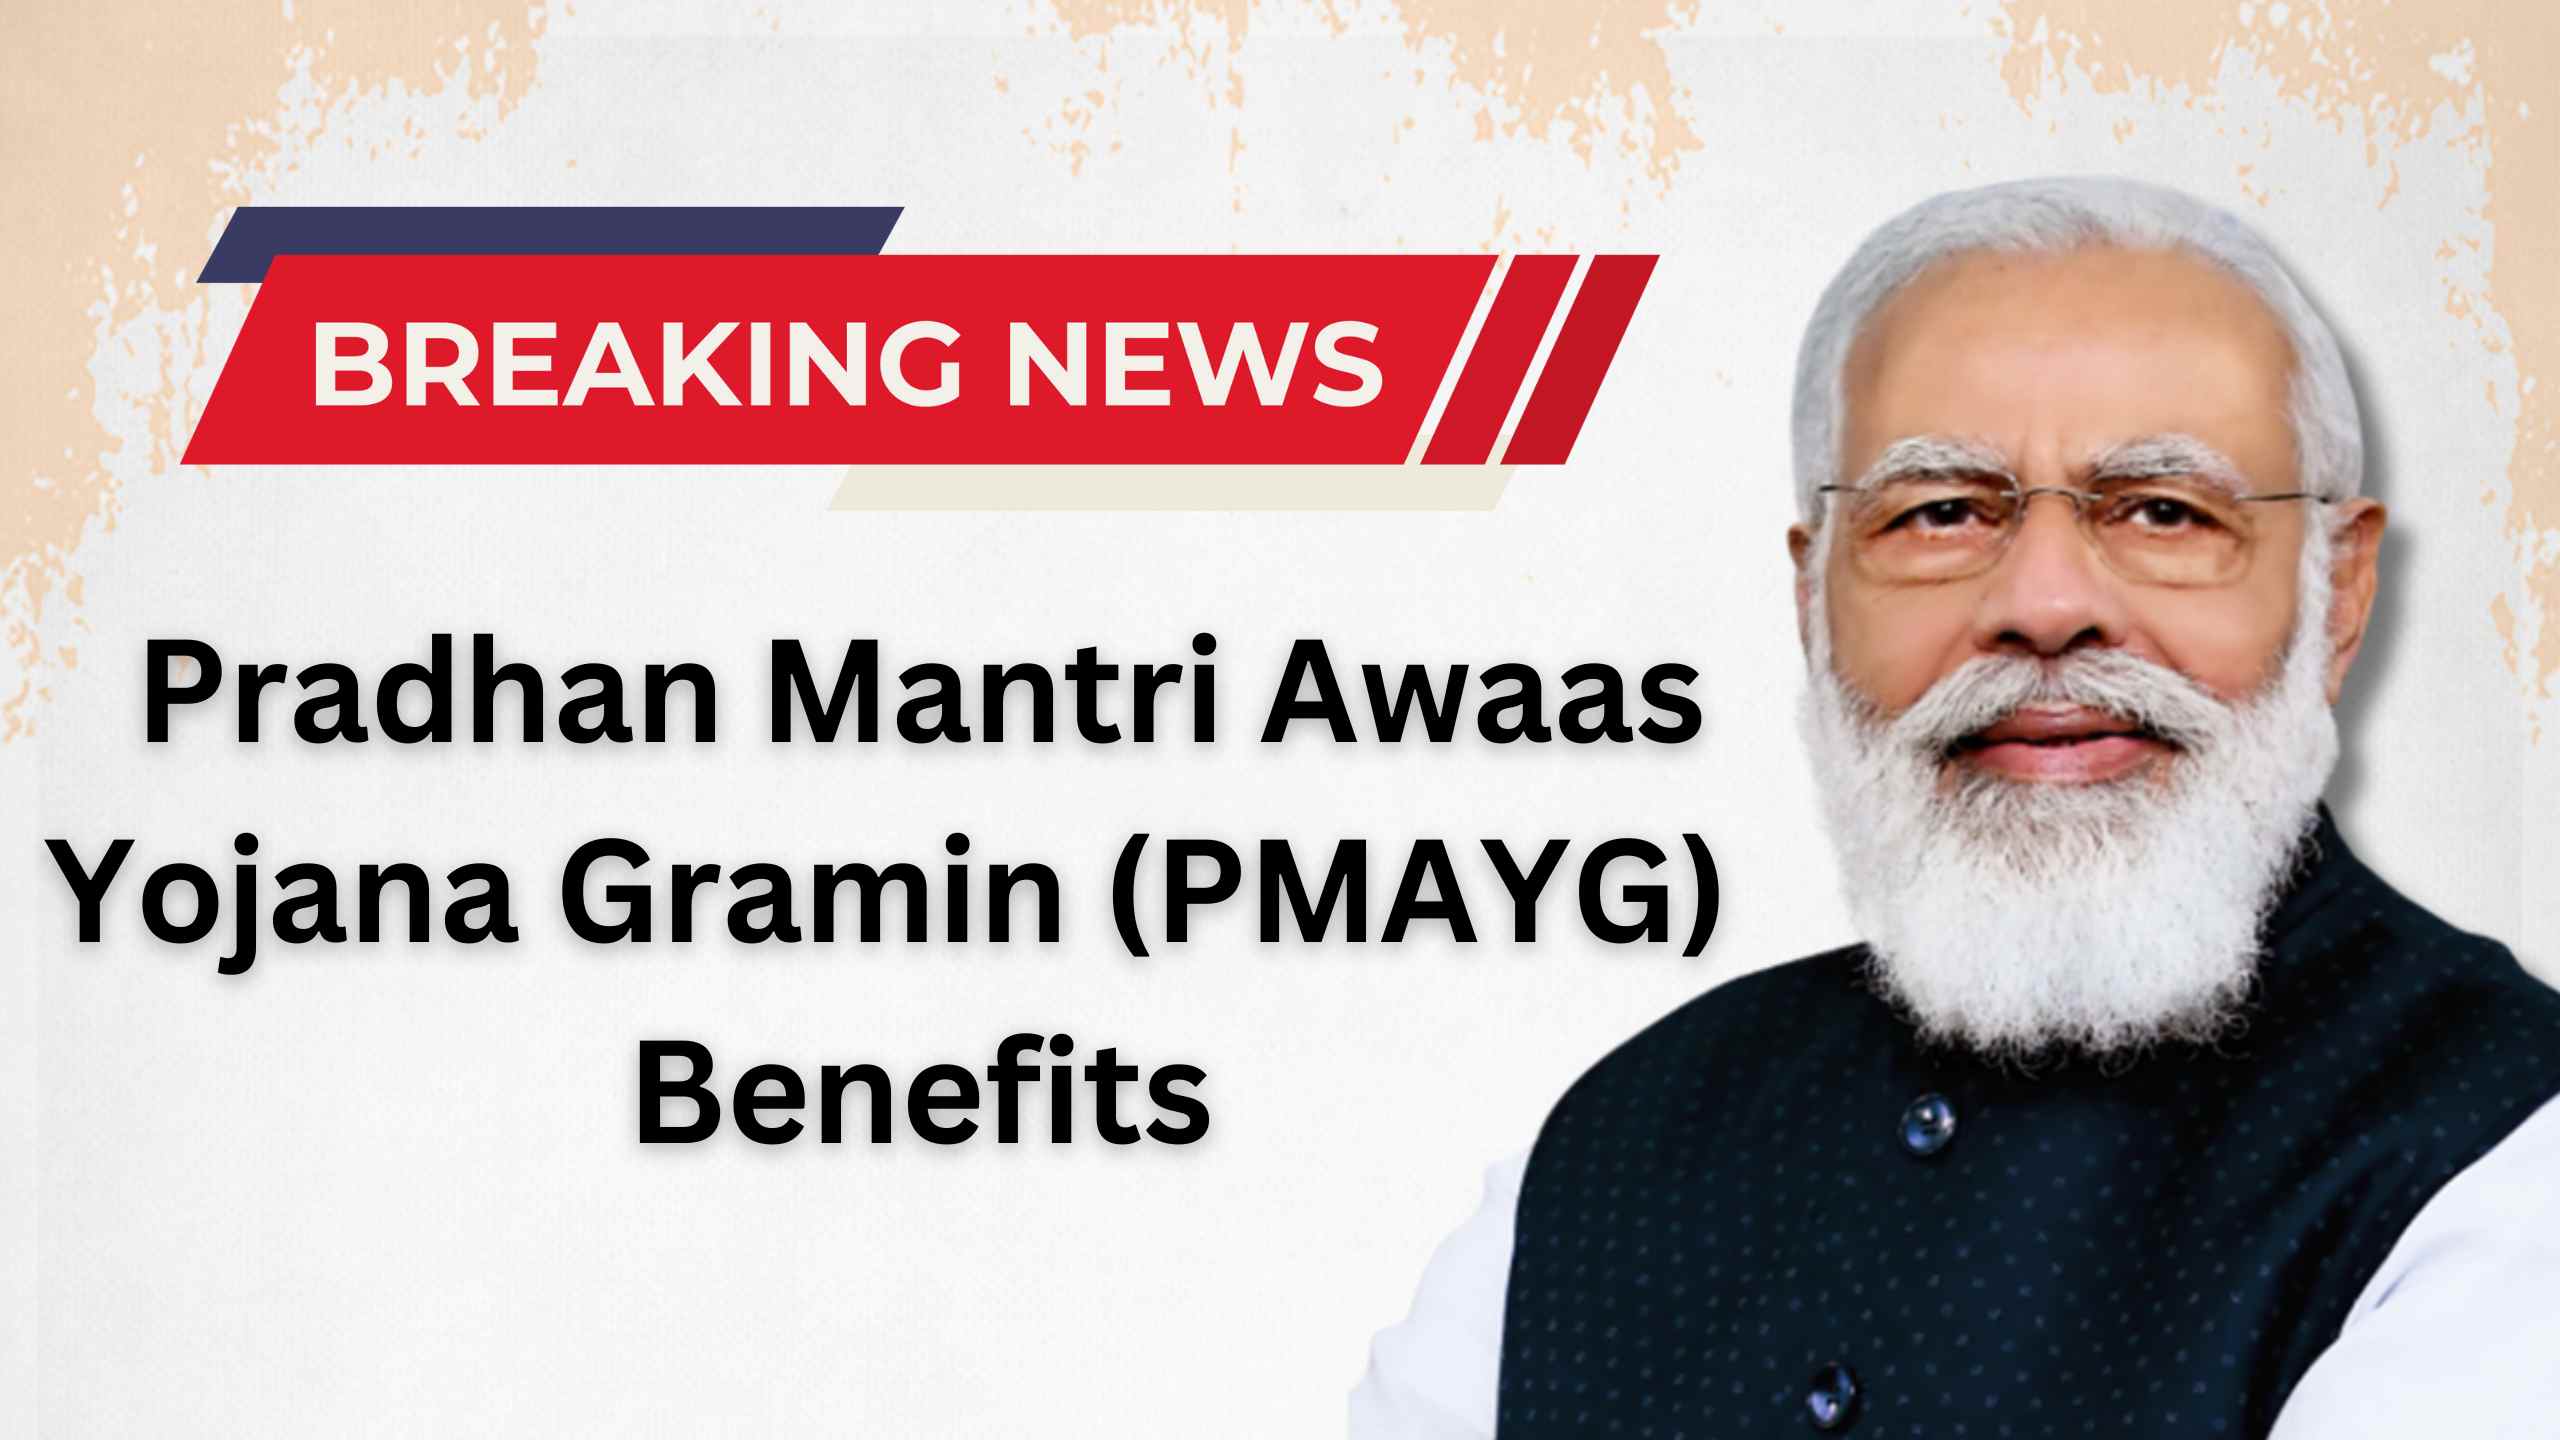 Pradhan Mantri Awaas Yojana Gramin (PMAYG) – Benefits